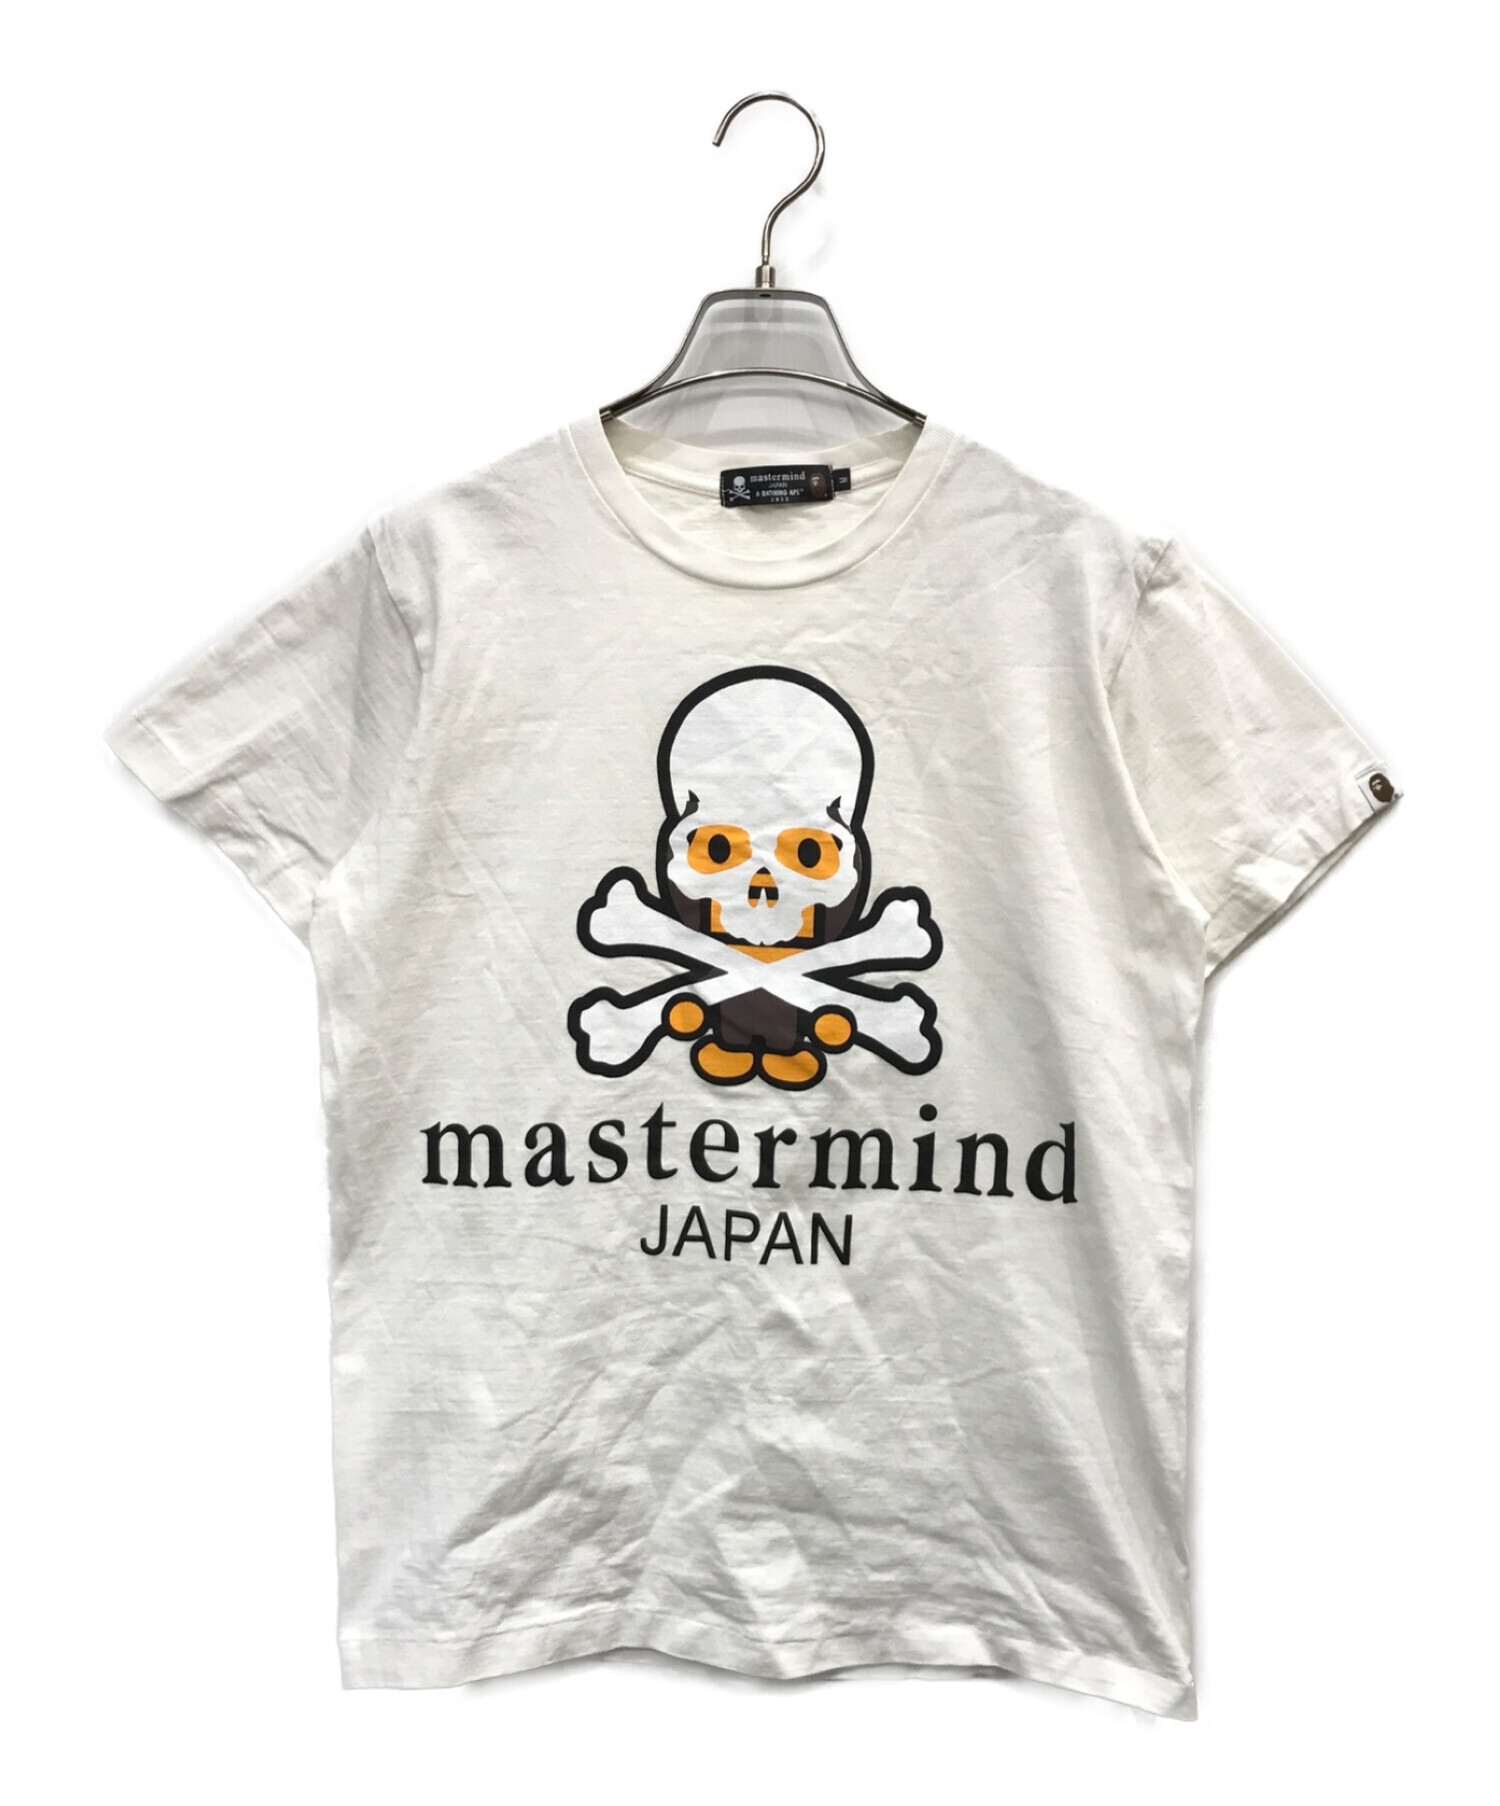 Mastermind JAPAN×A BATHING APE (マスターマインドジャパン×ア ベイシング エイプ) Tシャツ ホワイト サイズ:M